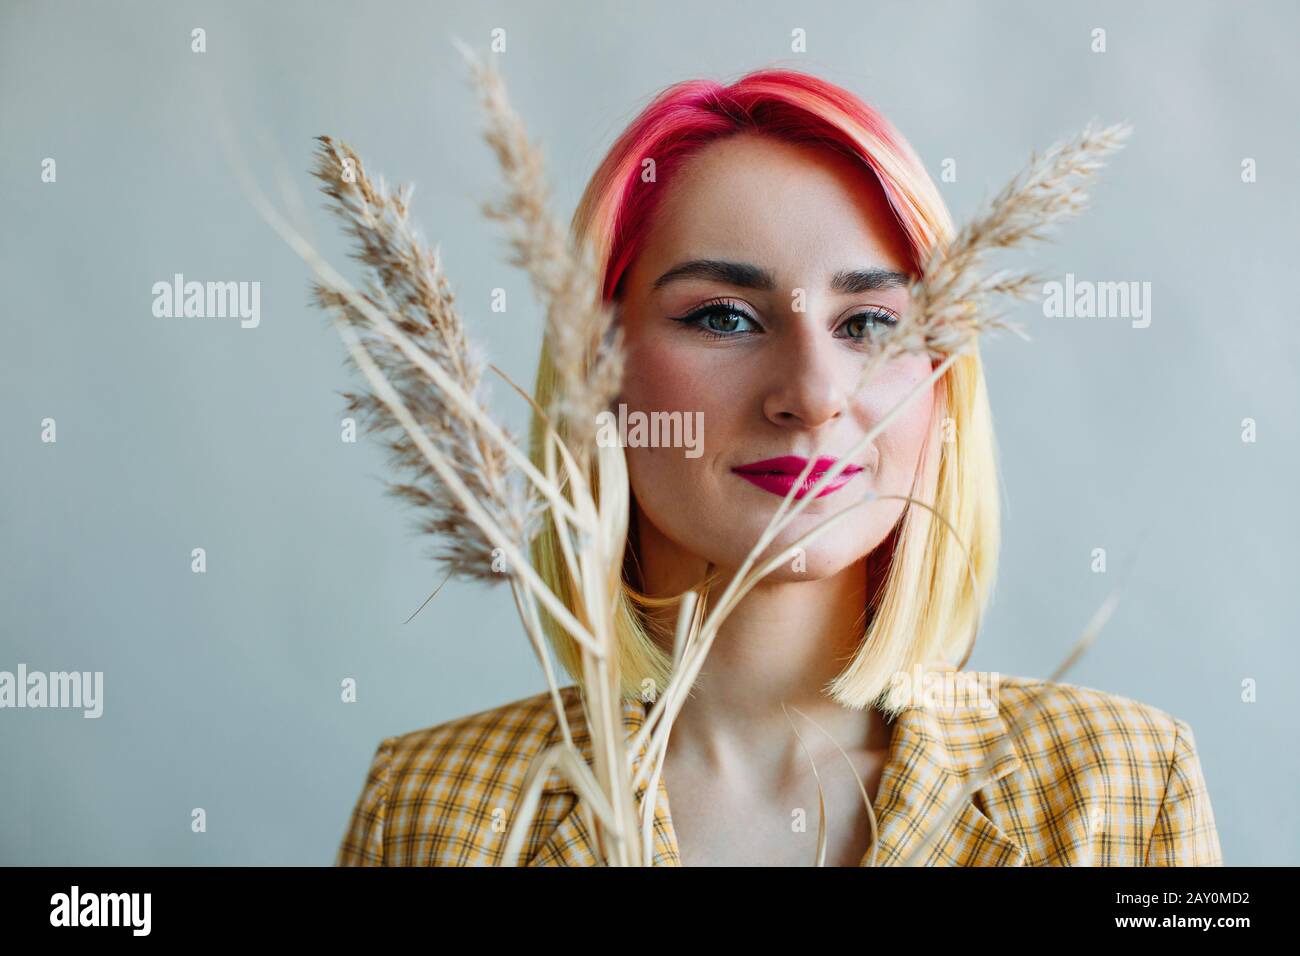 Porträt eines coolen Mädchens mit gefärbtem Haar, das einen Anzug trägt Stockfoto